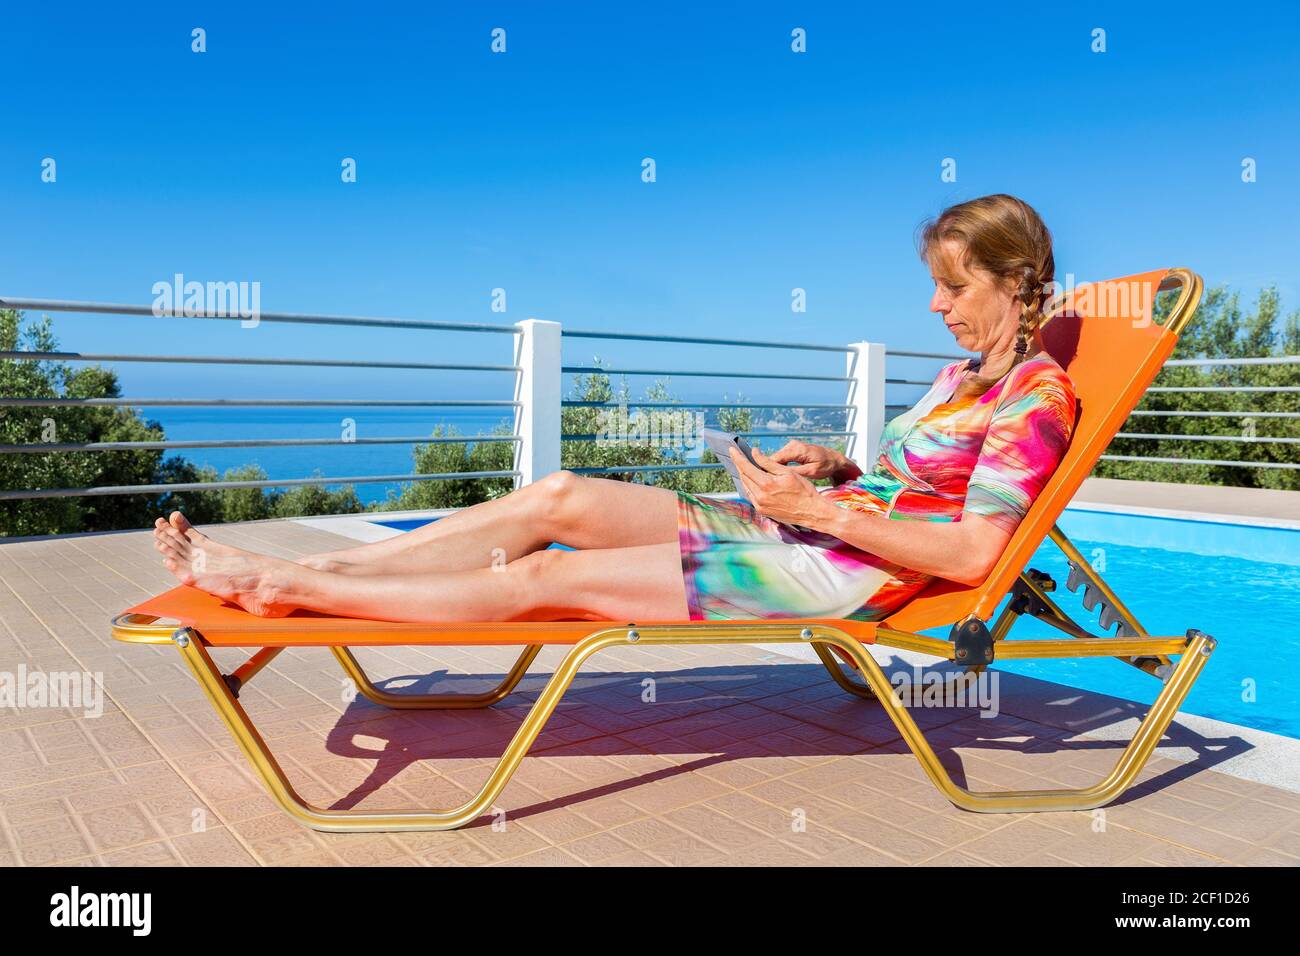 Mujer holandesa de mediana edad acostada en una tumbona naranja leyendo una tableta cerca de la piscina Foto de stock